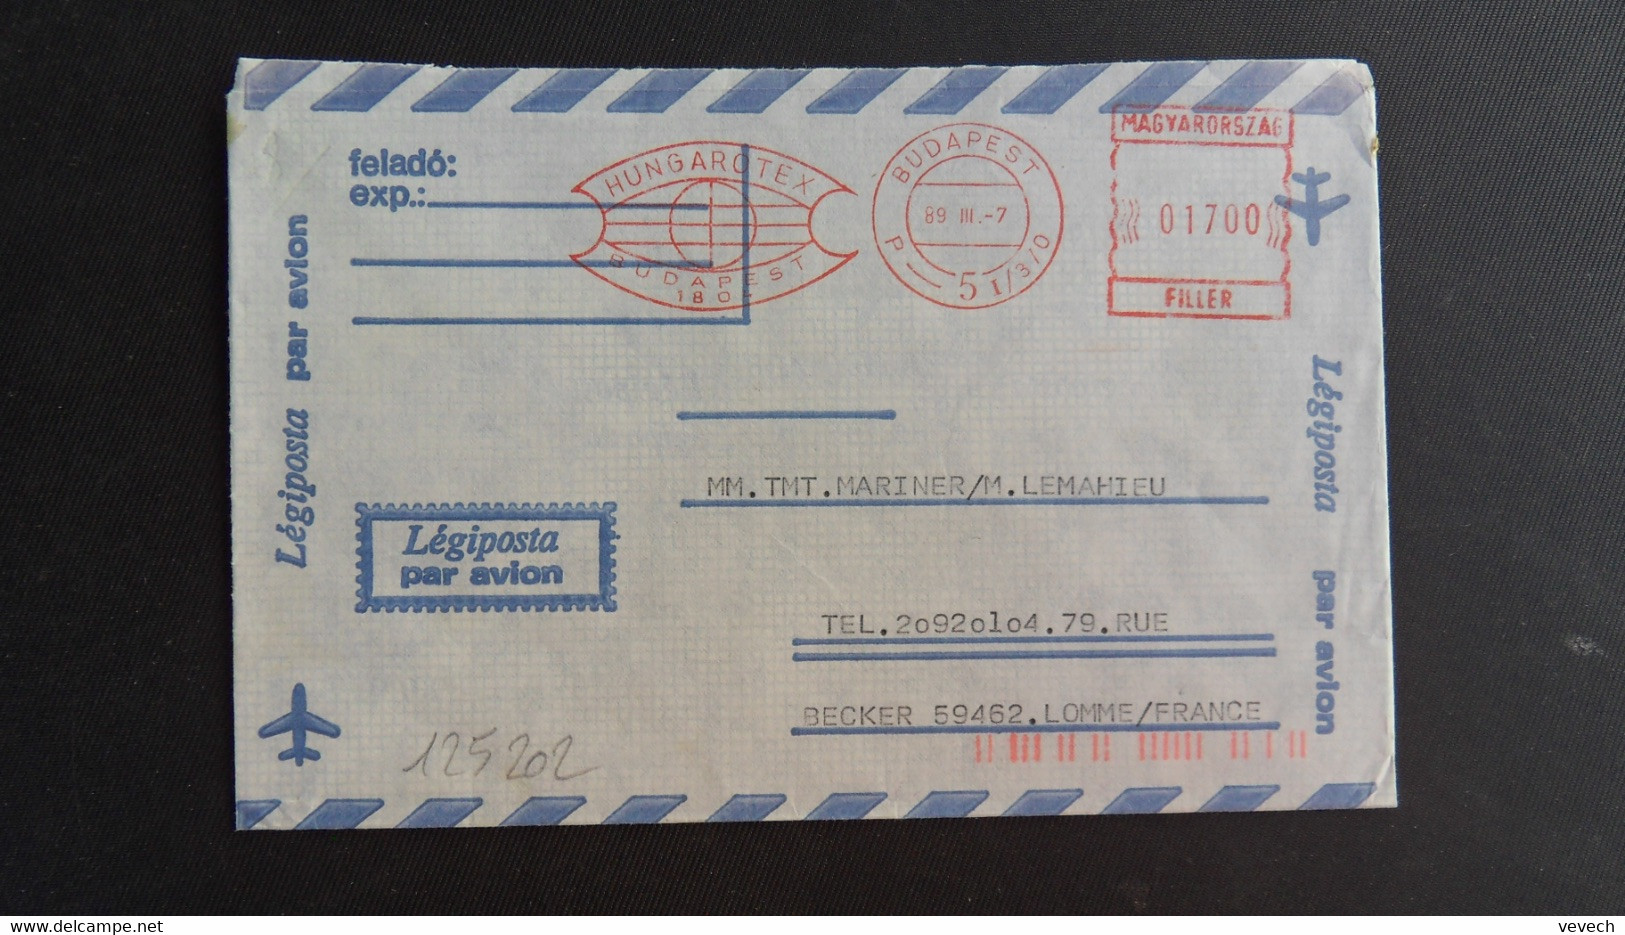 LETTRE Par Avion Pour La FRANCE EMA à 01700 Du 89 III 7 BUDAPEST + HUNGAROTEX - Lettres & Documents